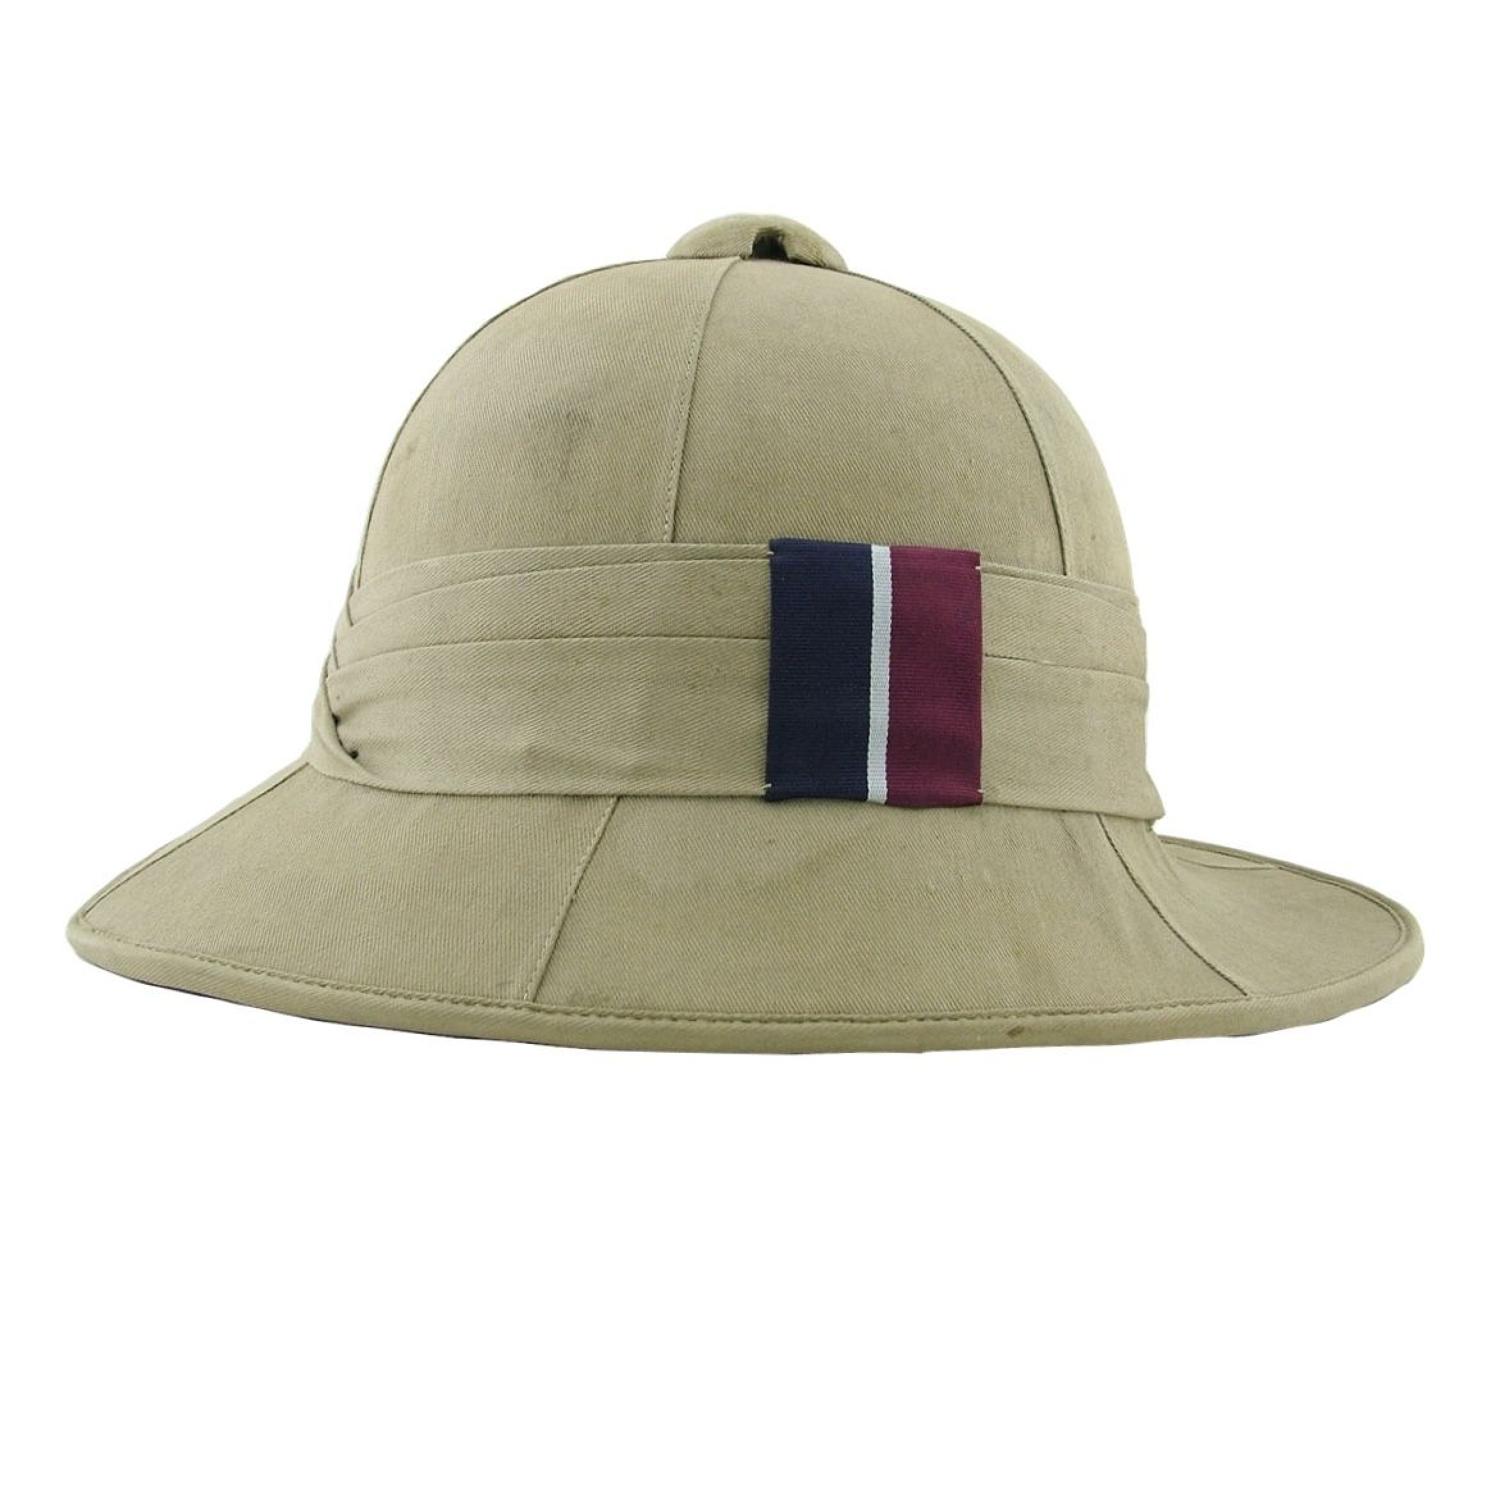 RAF issue 'Wolseley' helmet